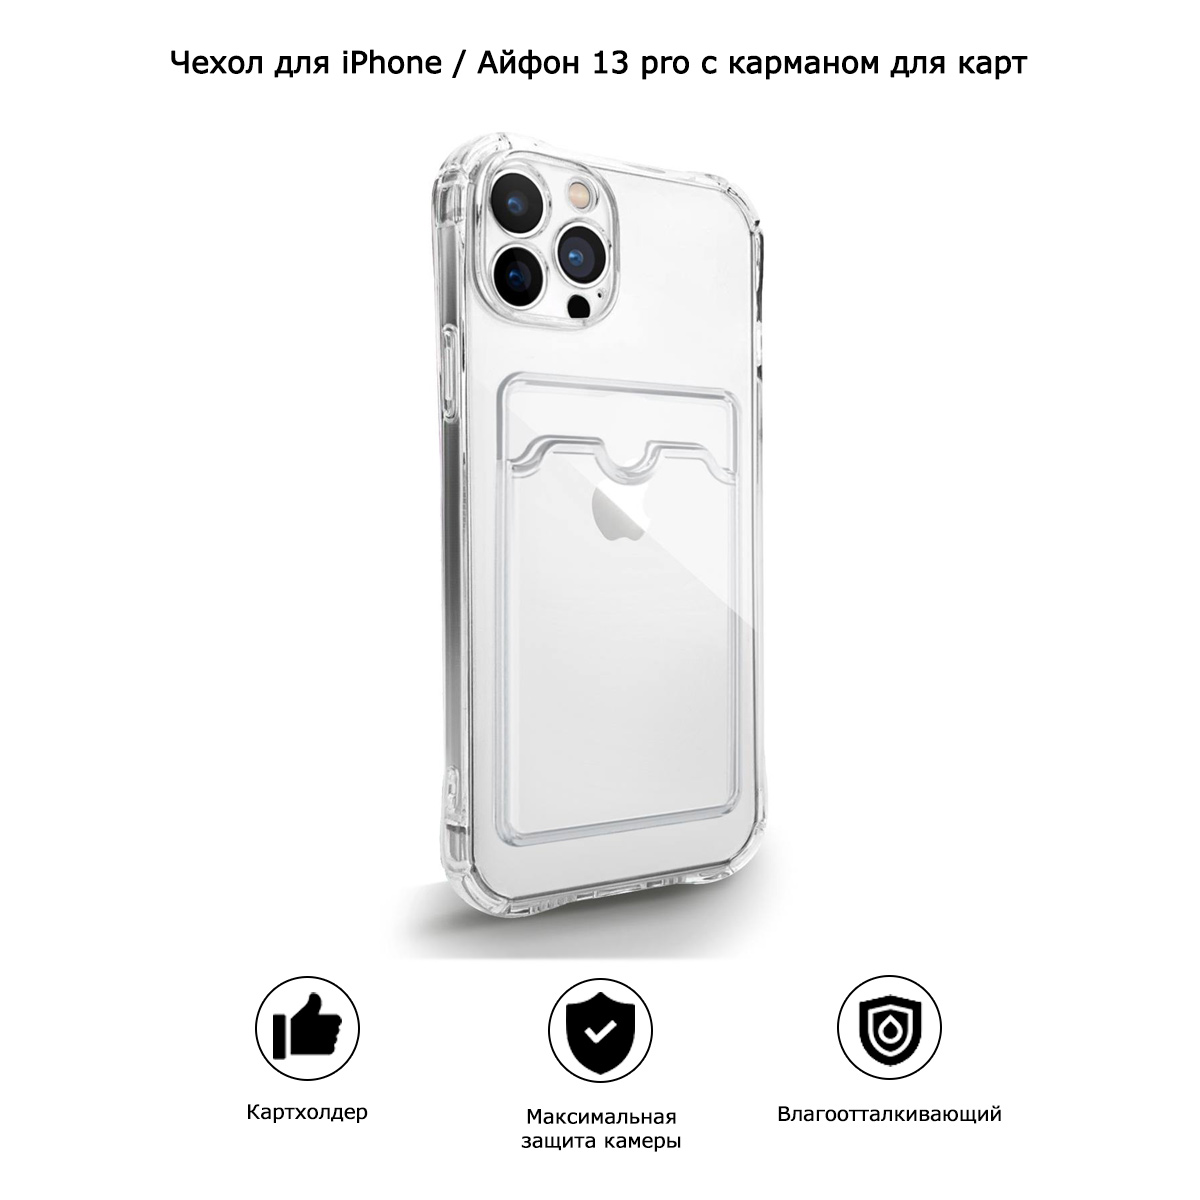 Чехол для iPhone / Айфон 13 pro с карманом для карт (прозрачный)